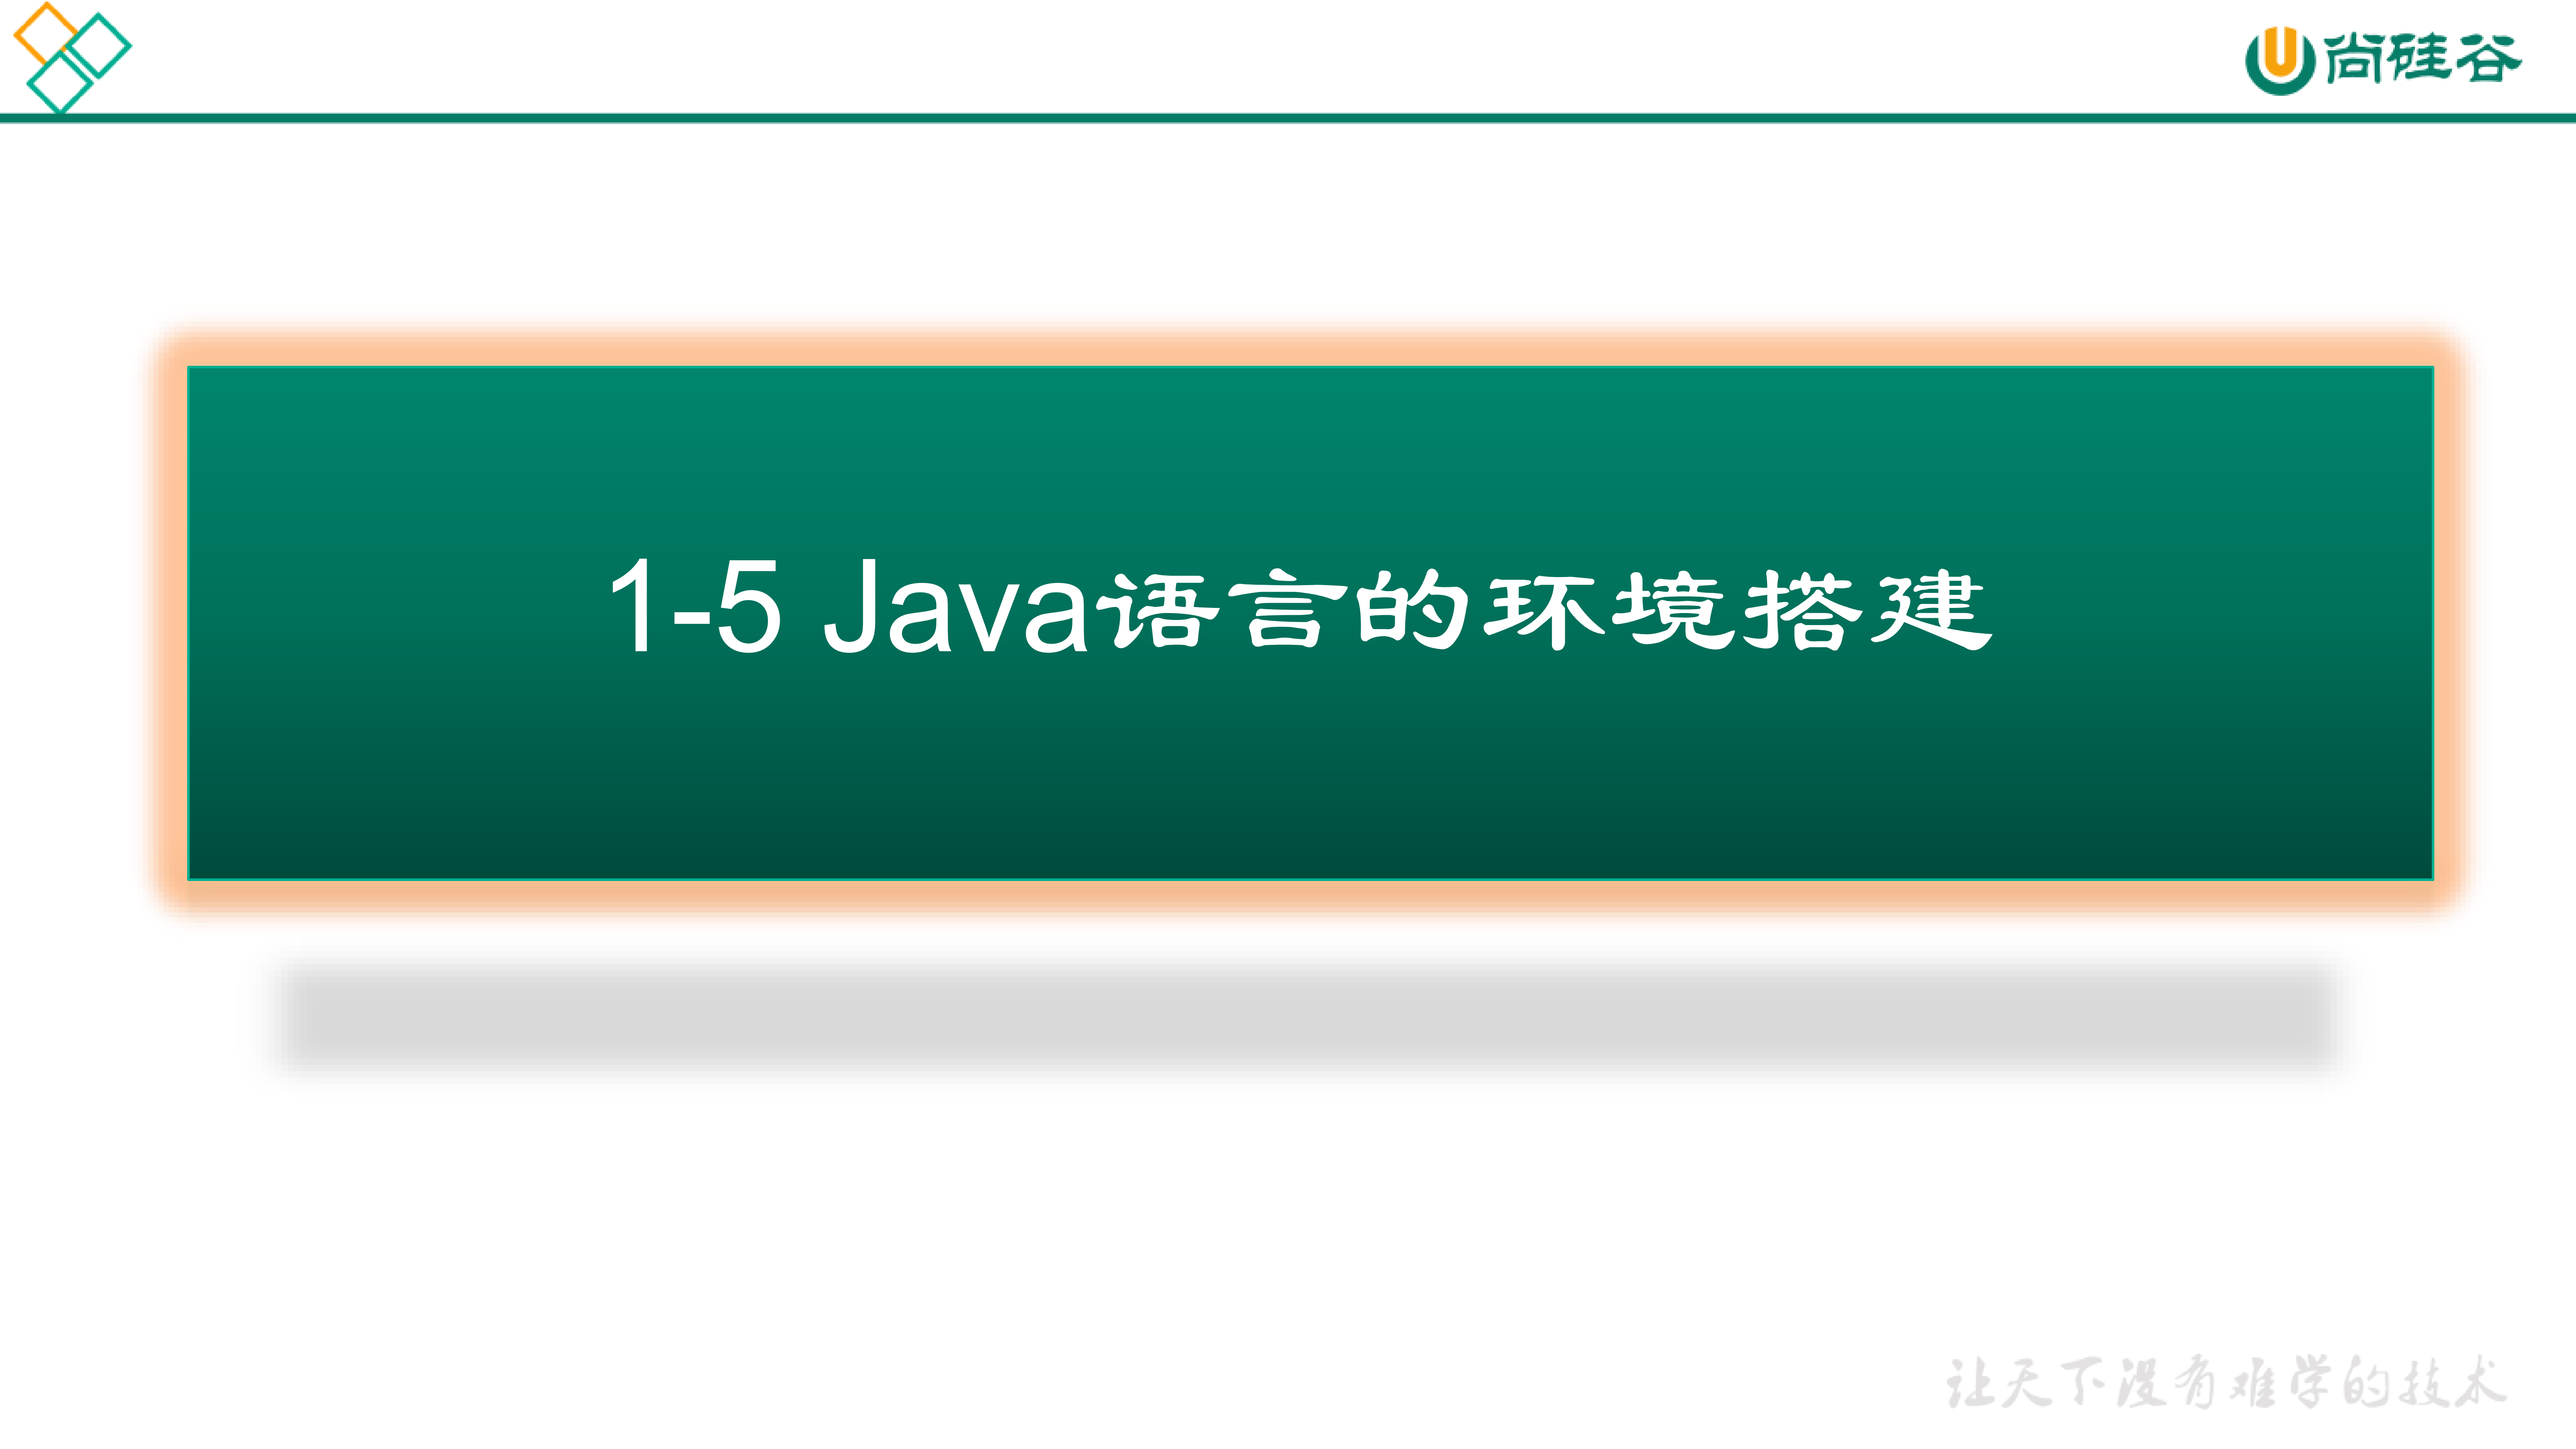 尚硅谷_宋红康_第1章_Java语言概述_36.png